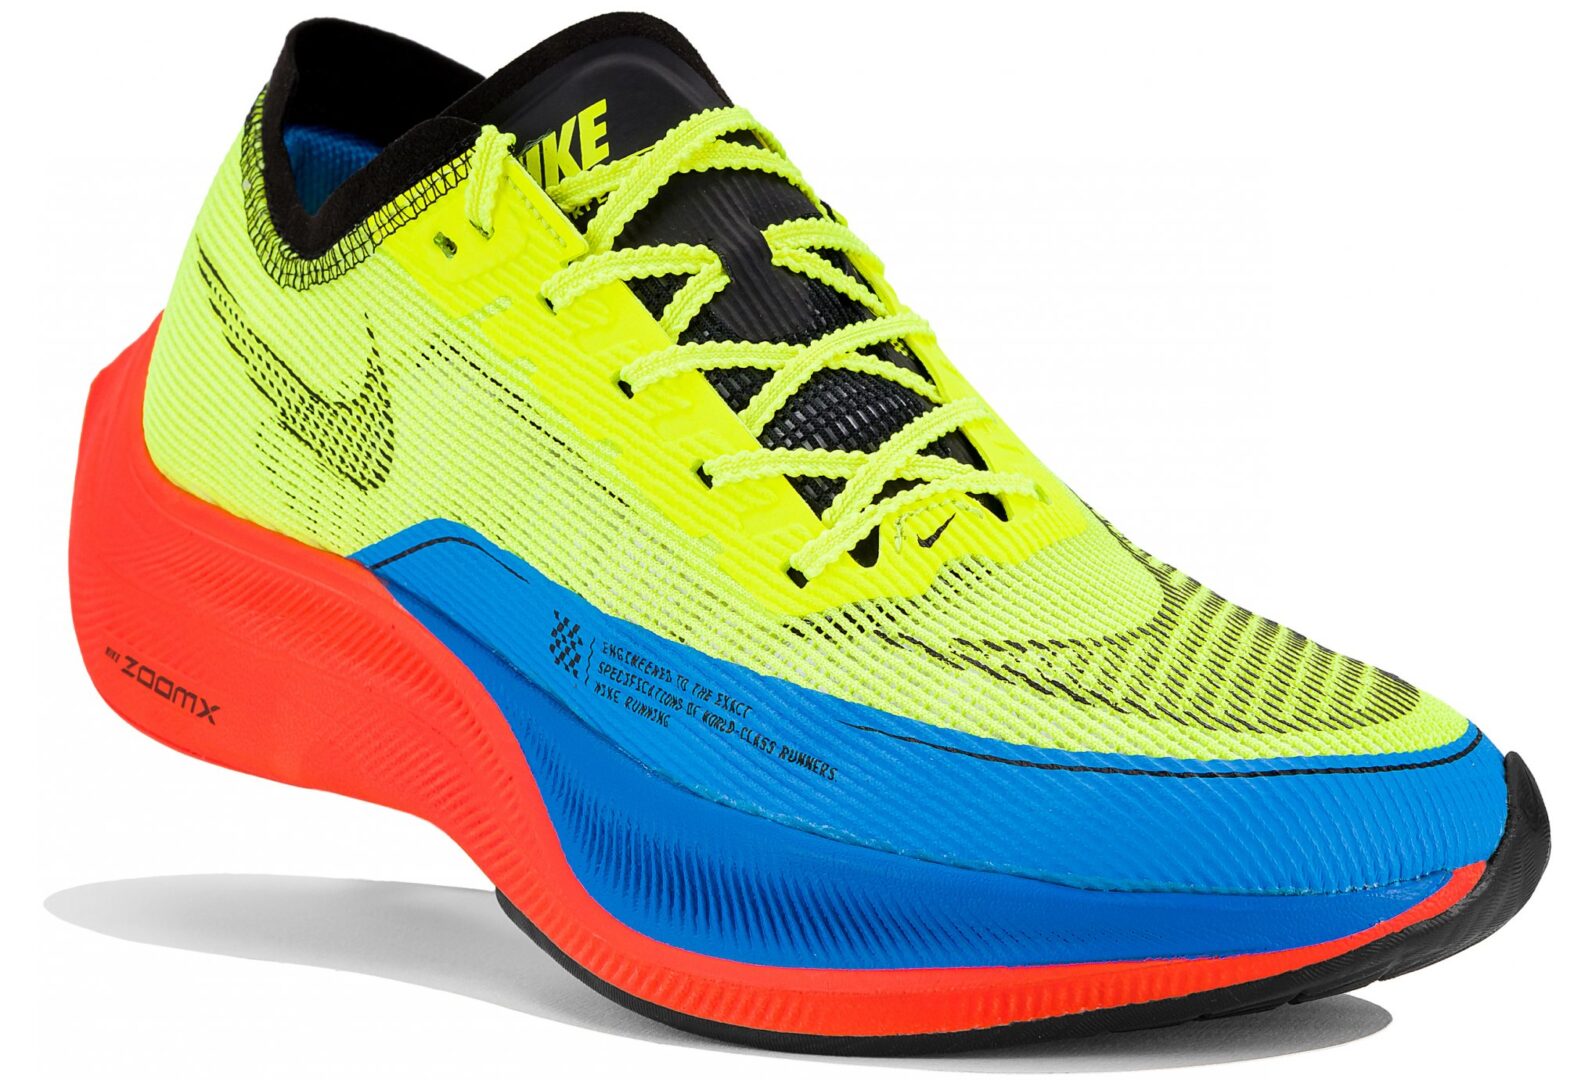 Chaussures running Nike Vaporfly